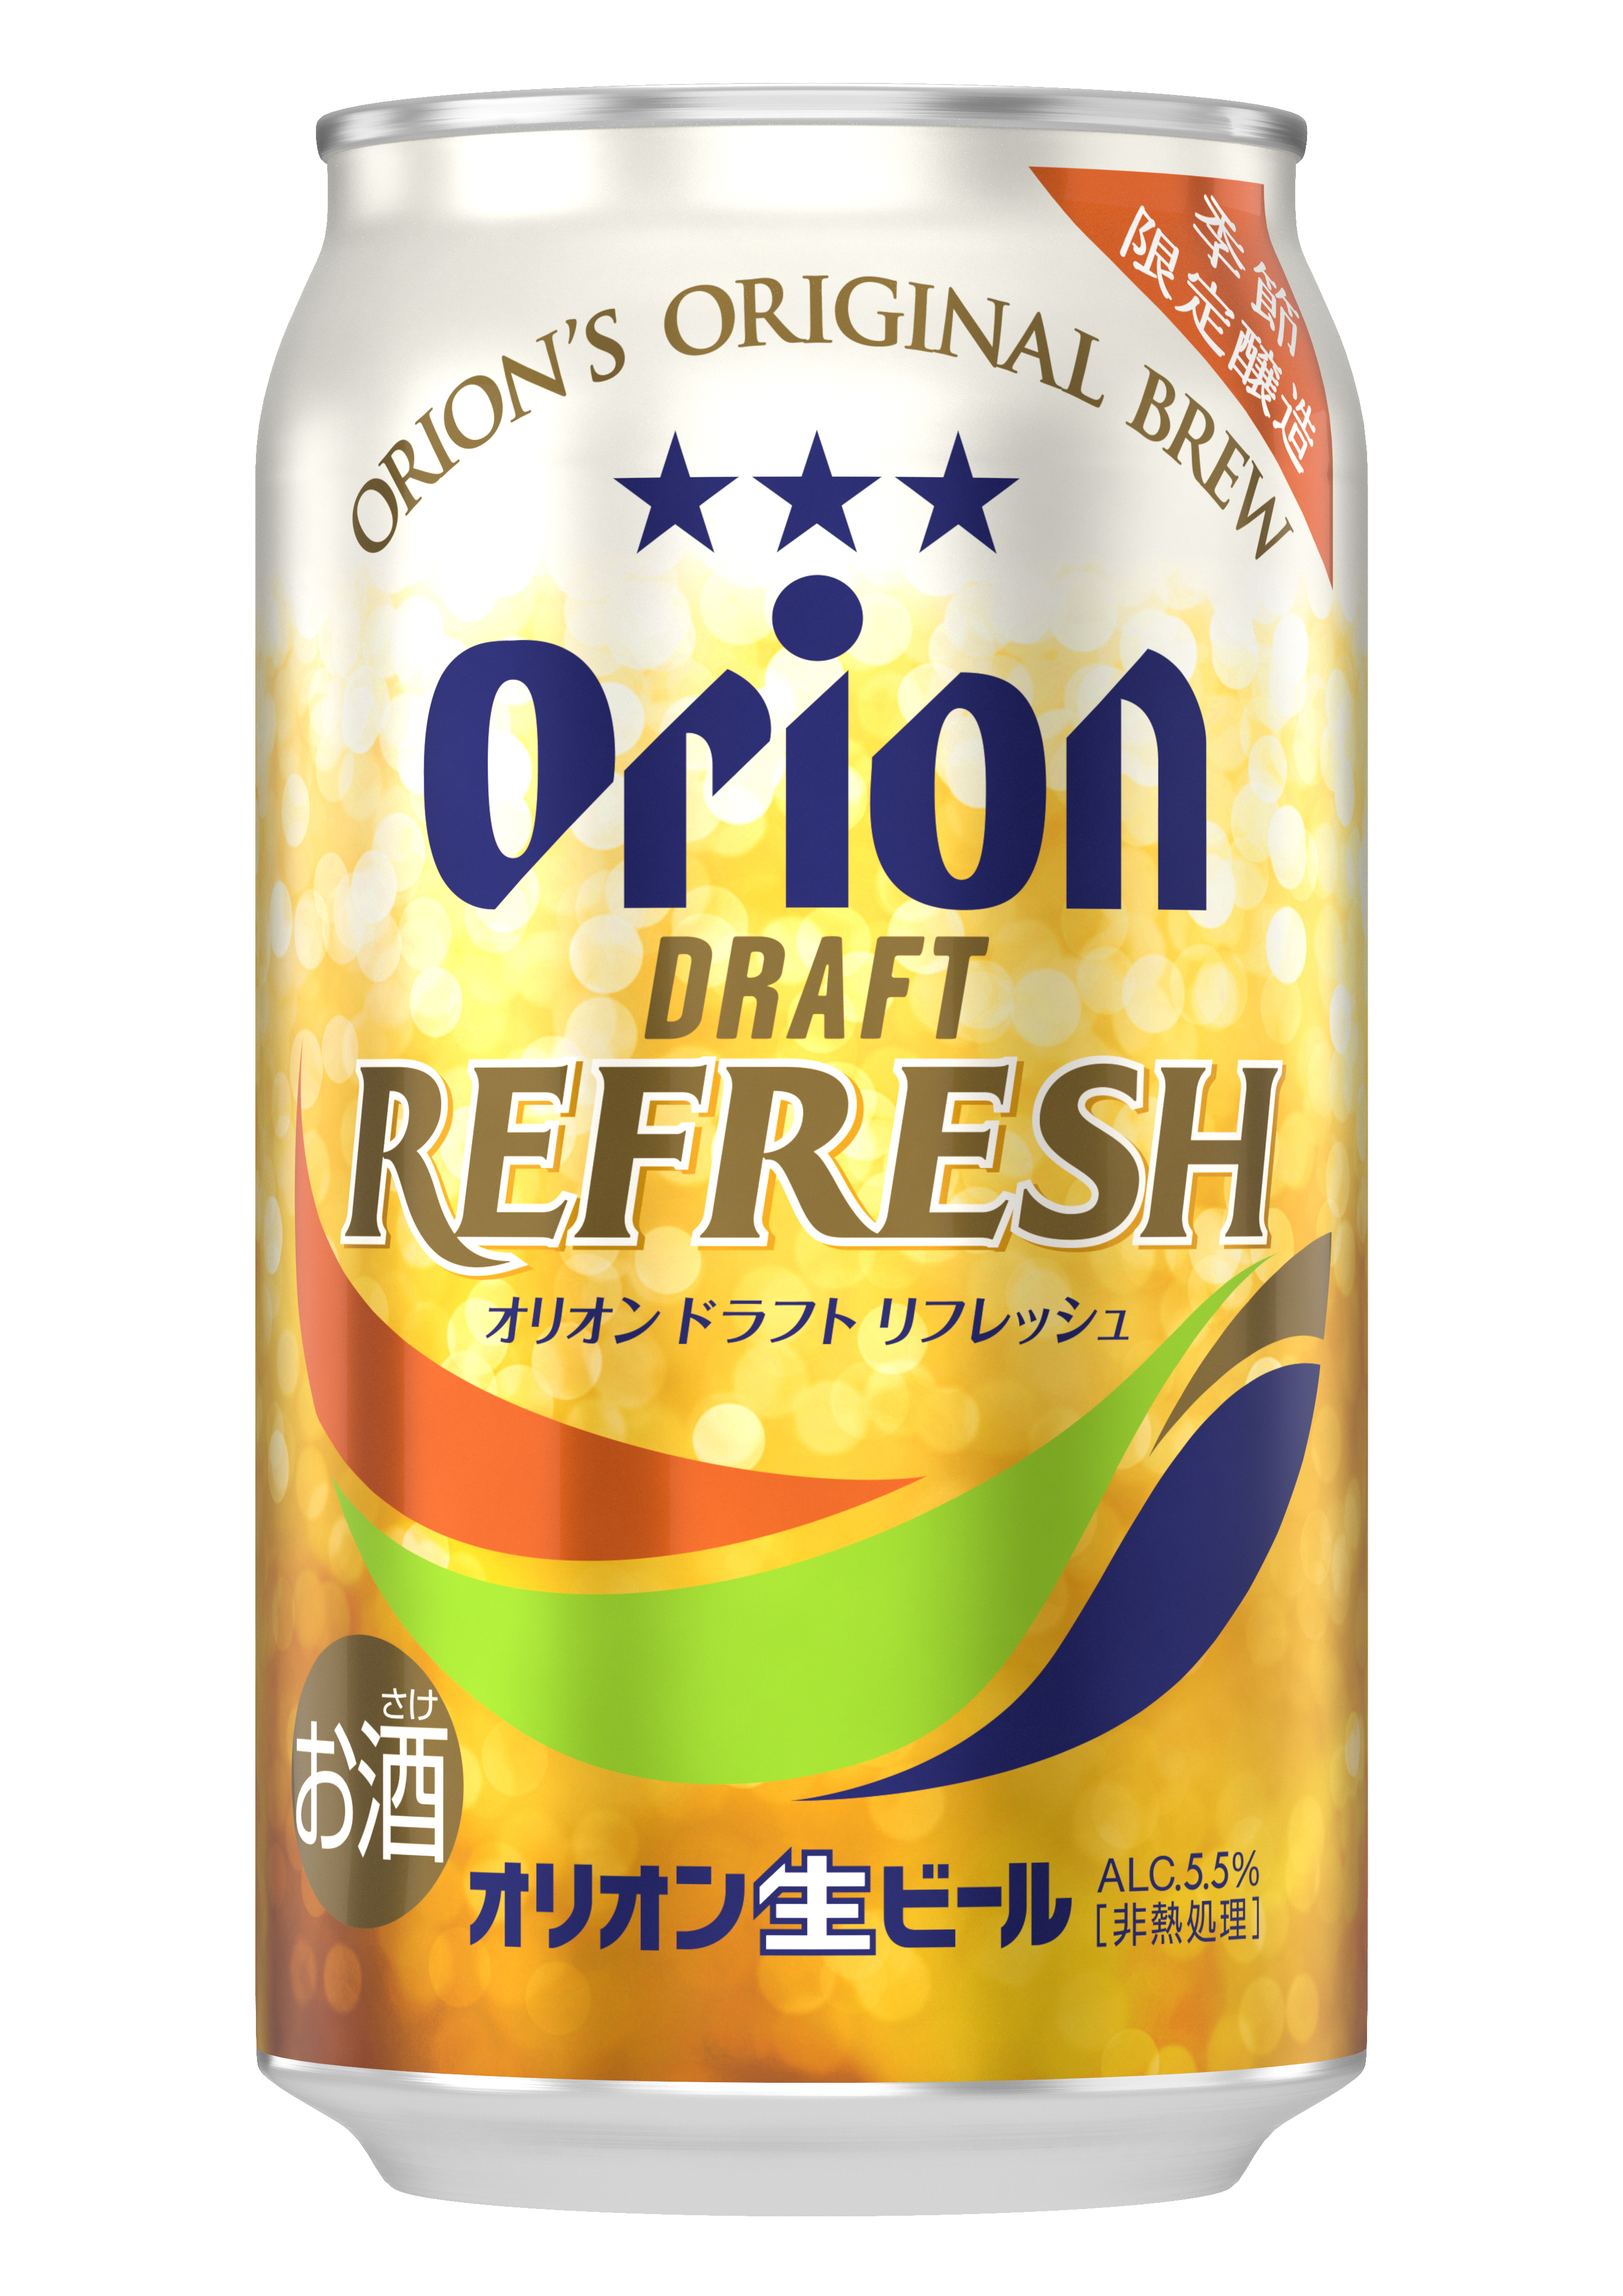 オリオンドラフト リフレッシュ 期間限定発売 オリオンビール株式会社のプレスリリース